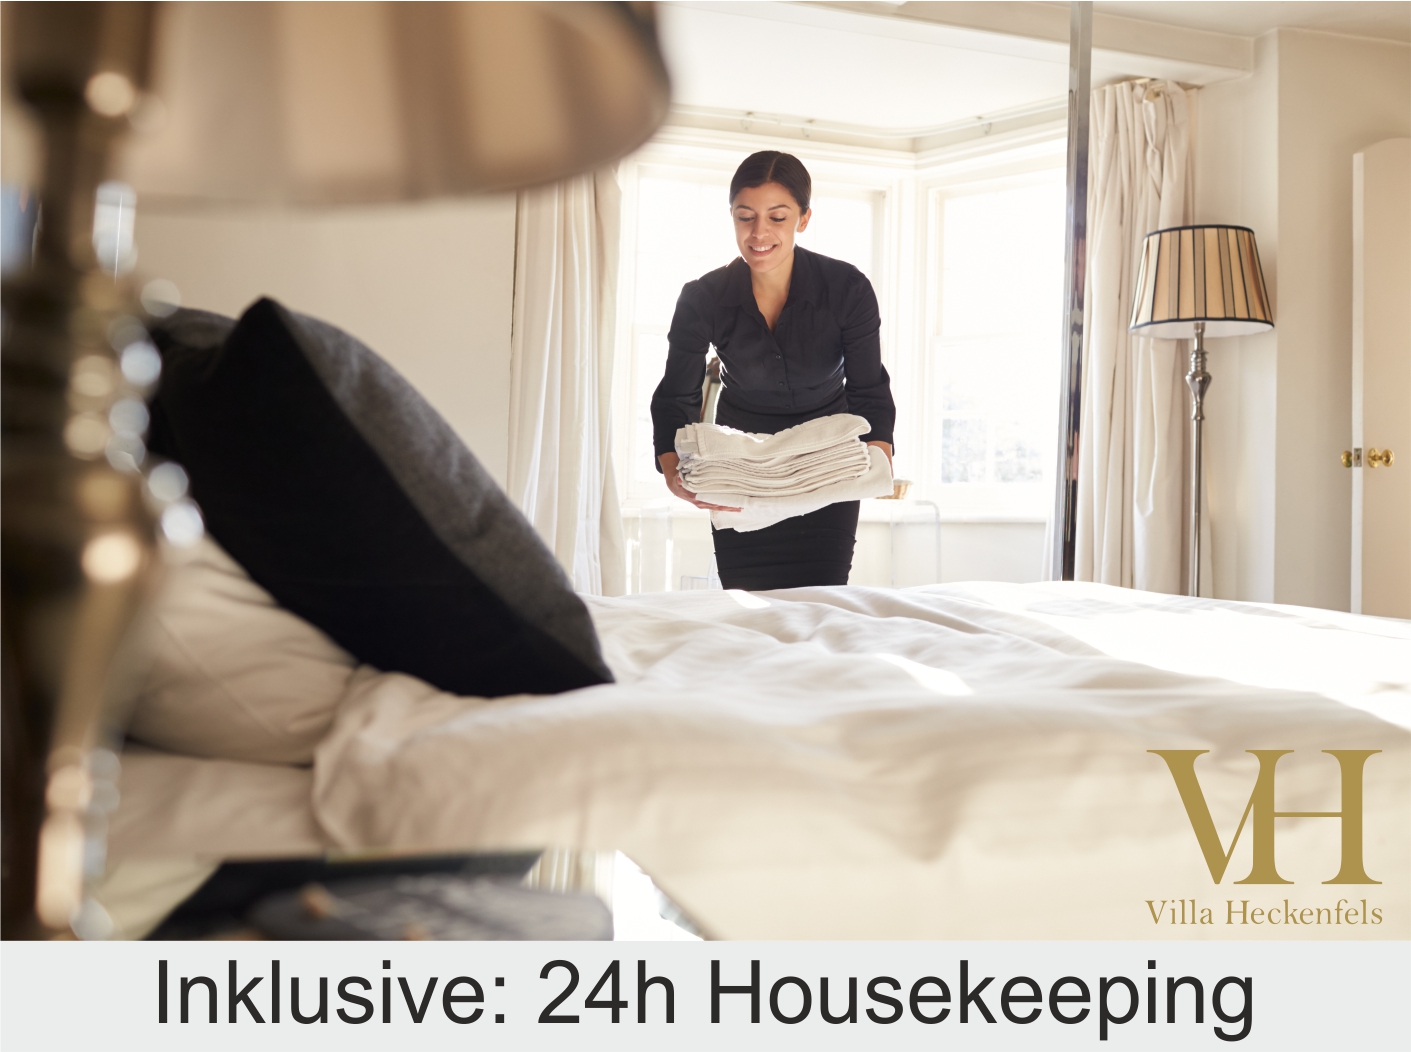 VH_Housekeeping2